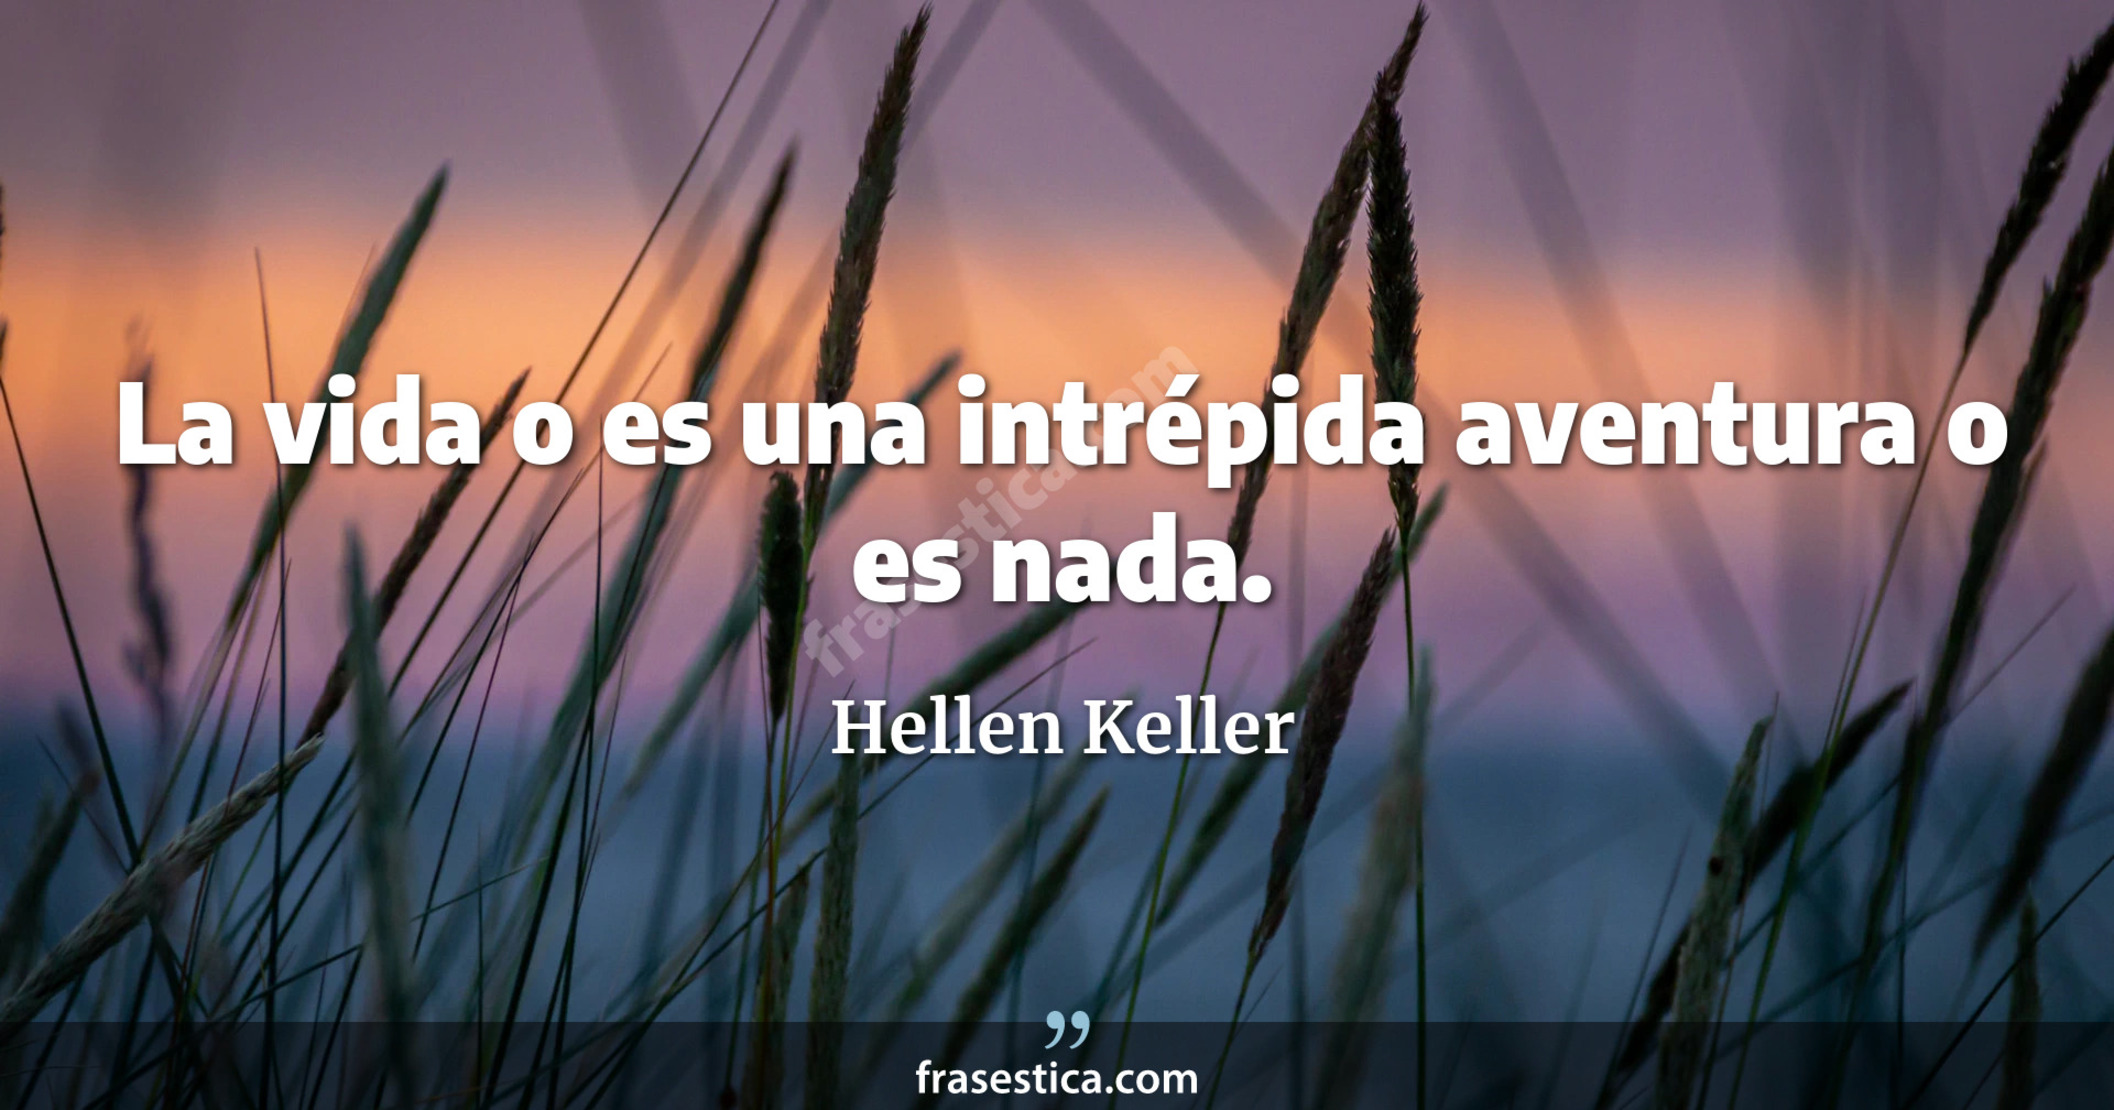 La vida o es una intrépida aventura o es nada. - Hellen Keller